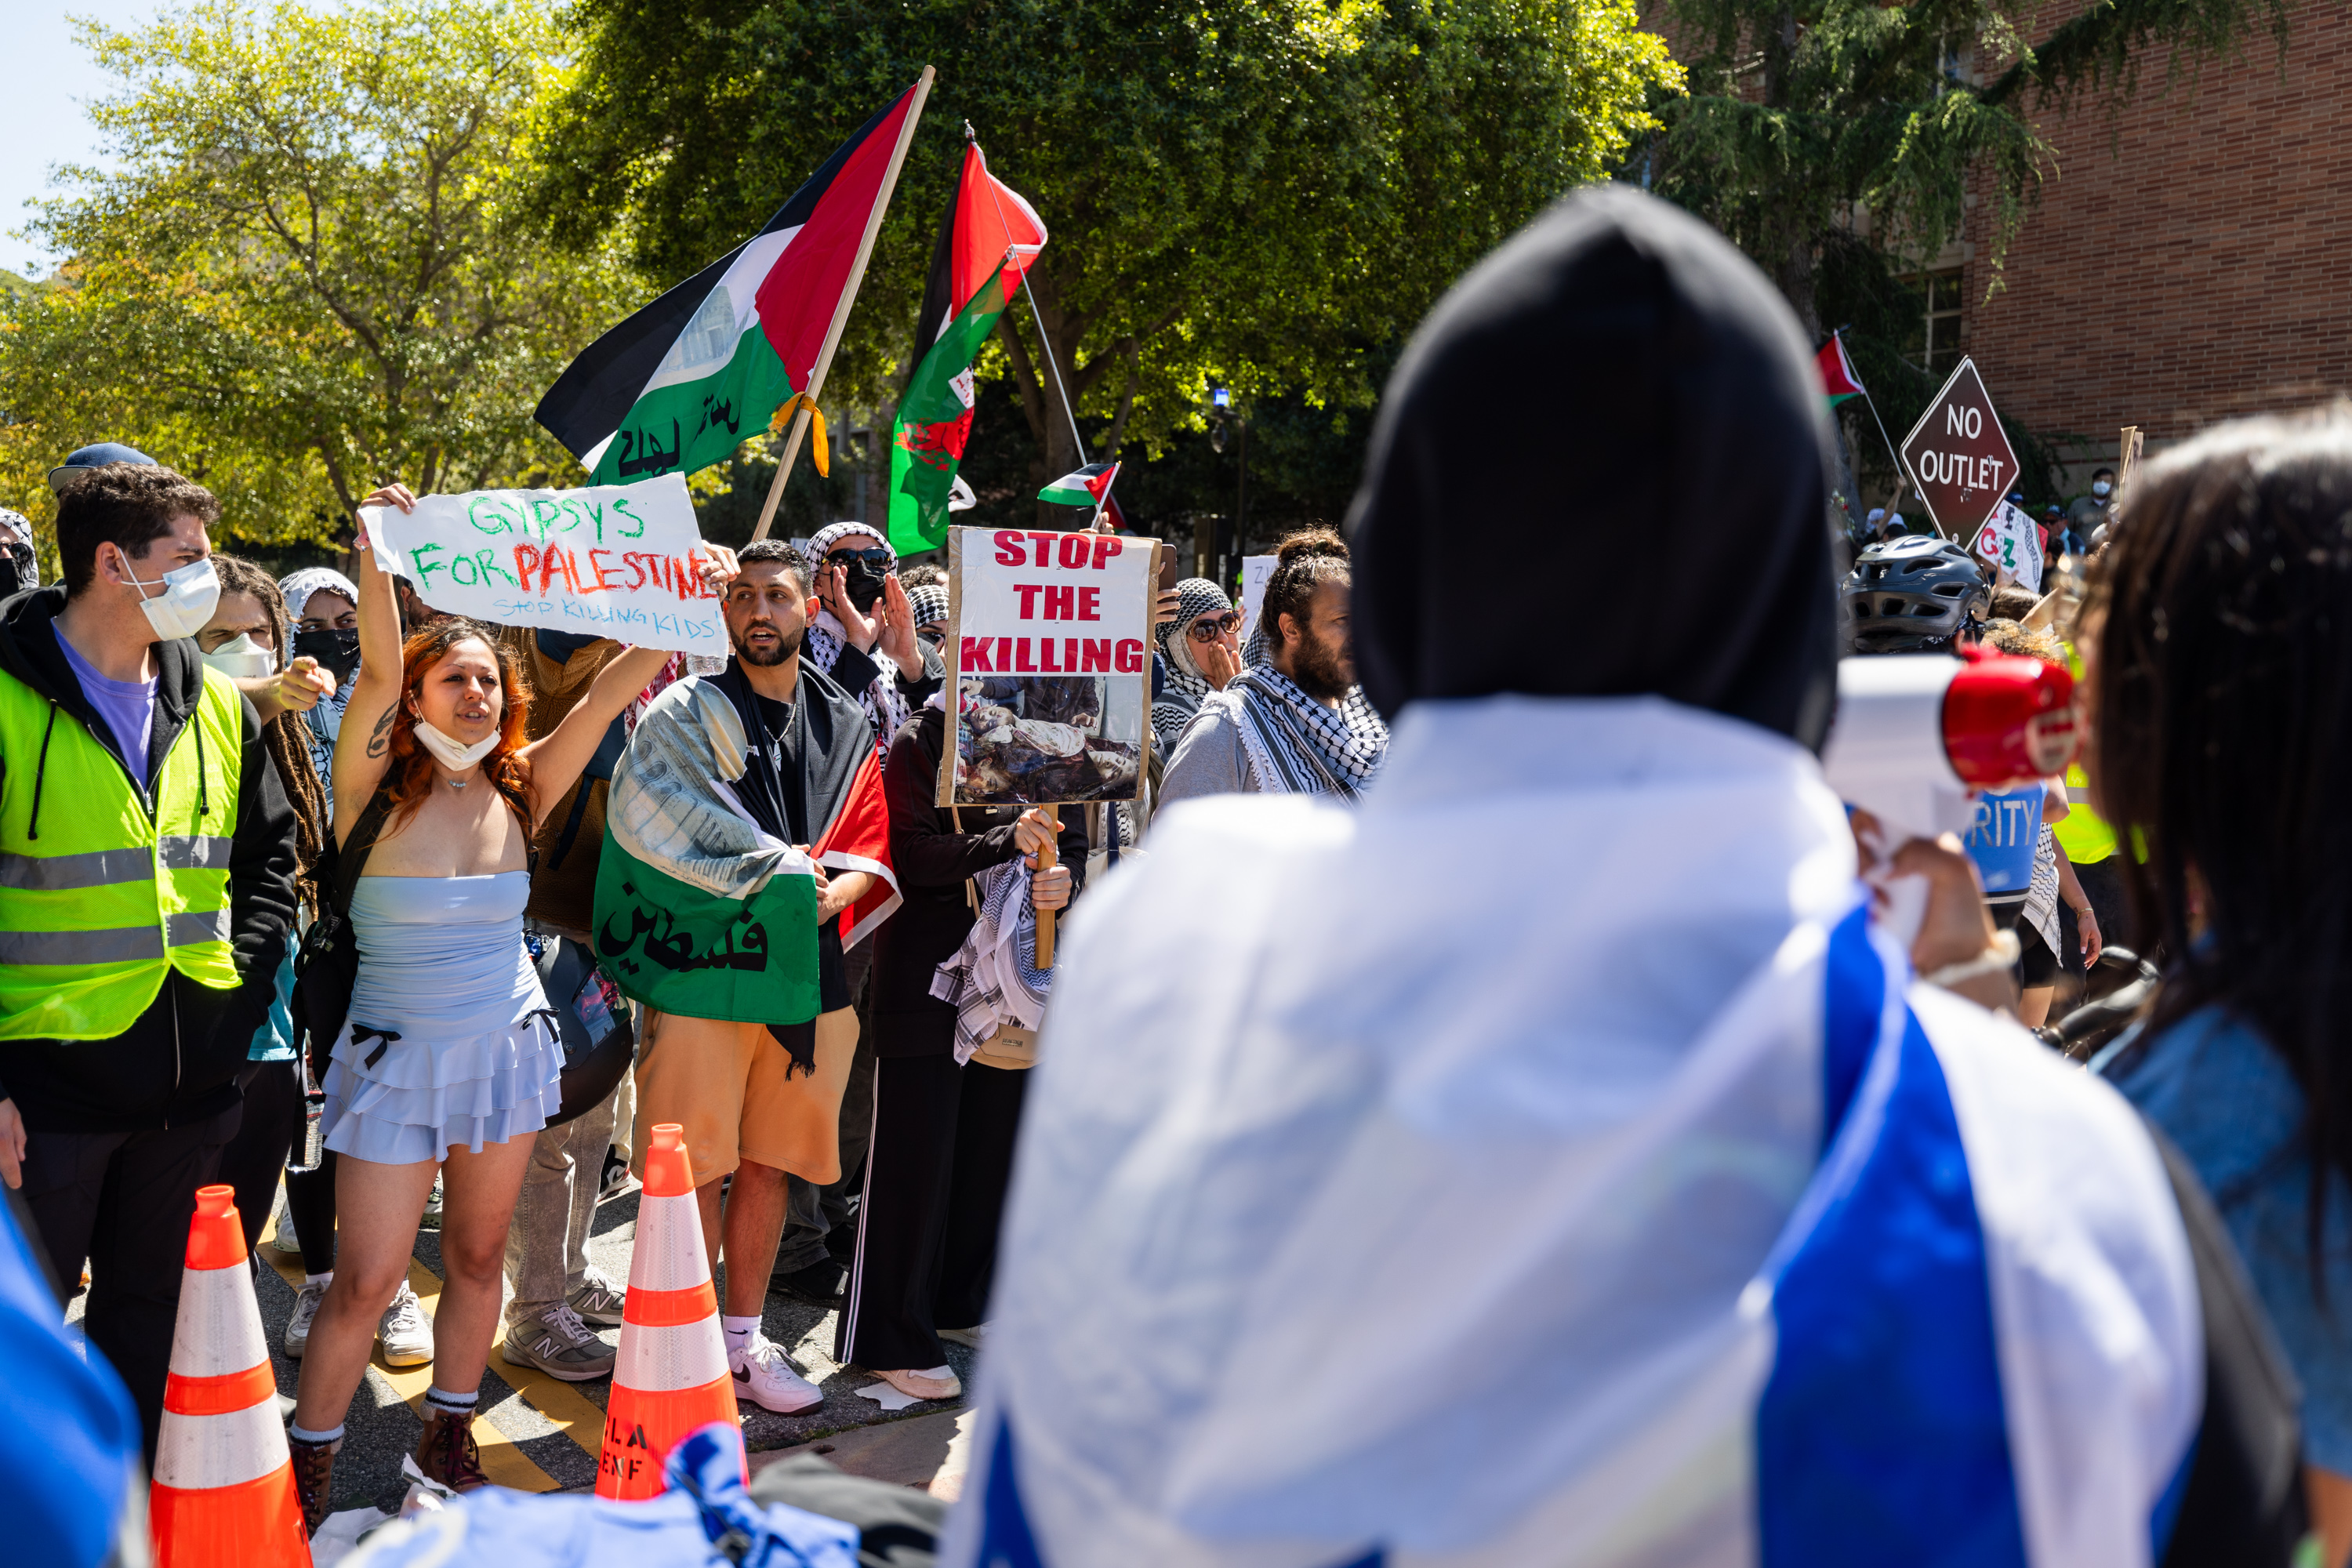 Fotos: protestas propalestinos y proisraelíes en USC y UCLA